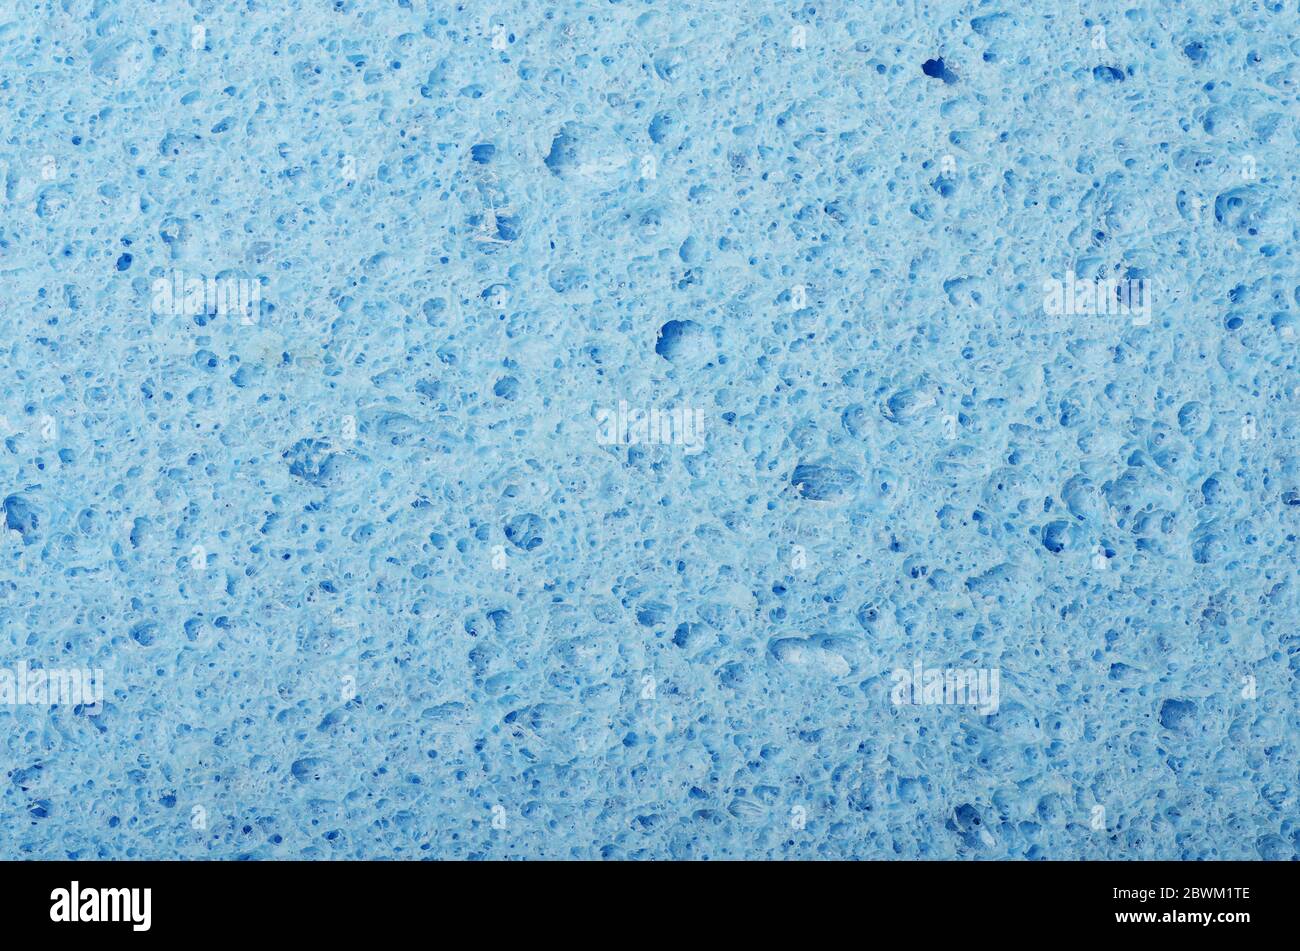 Textura de fondo de esponja facial de celulosa azul ovalada Foto de stock